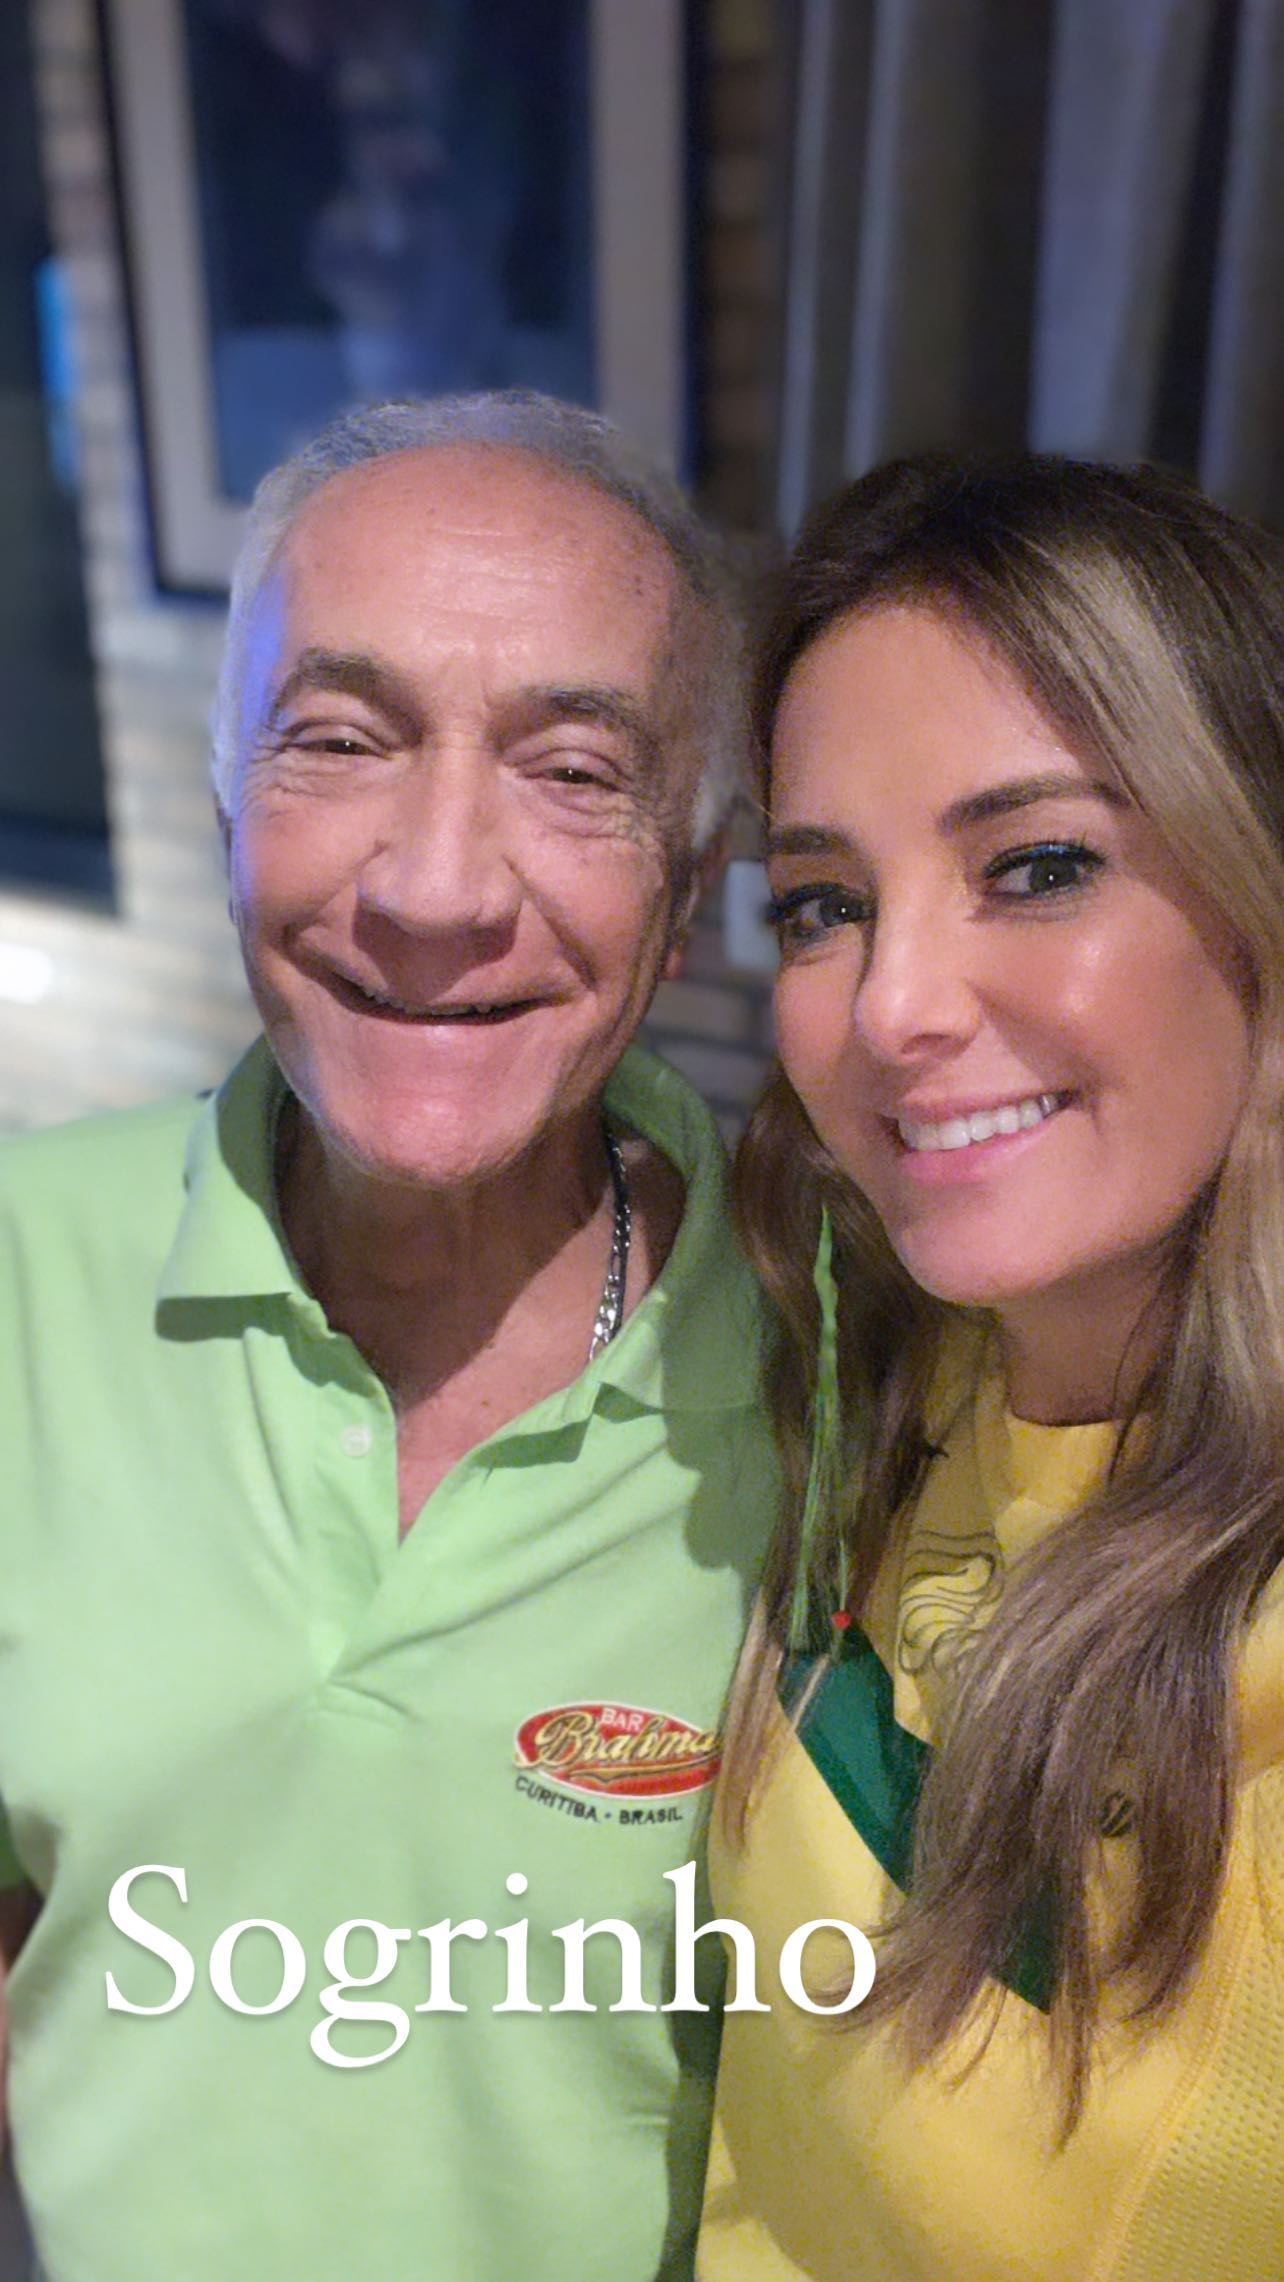 Ticiane Pinheiro aparece com uma camisa do Brasil amarela e posa coladinha com o sogro, que usa uma camisa verde